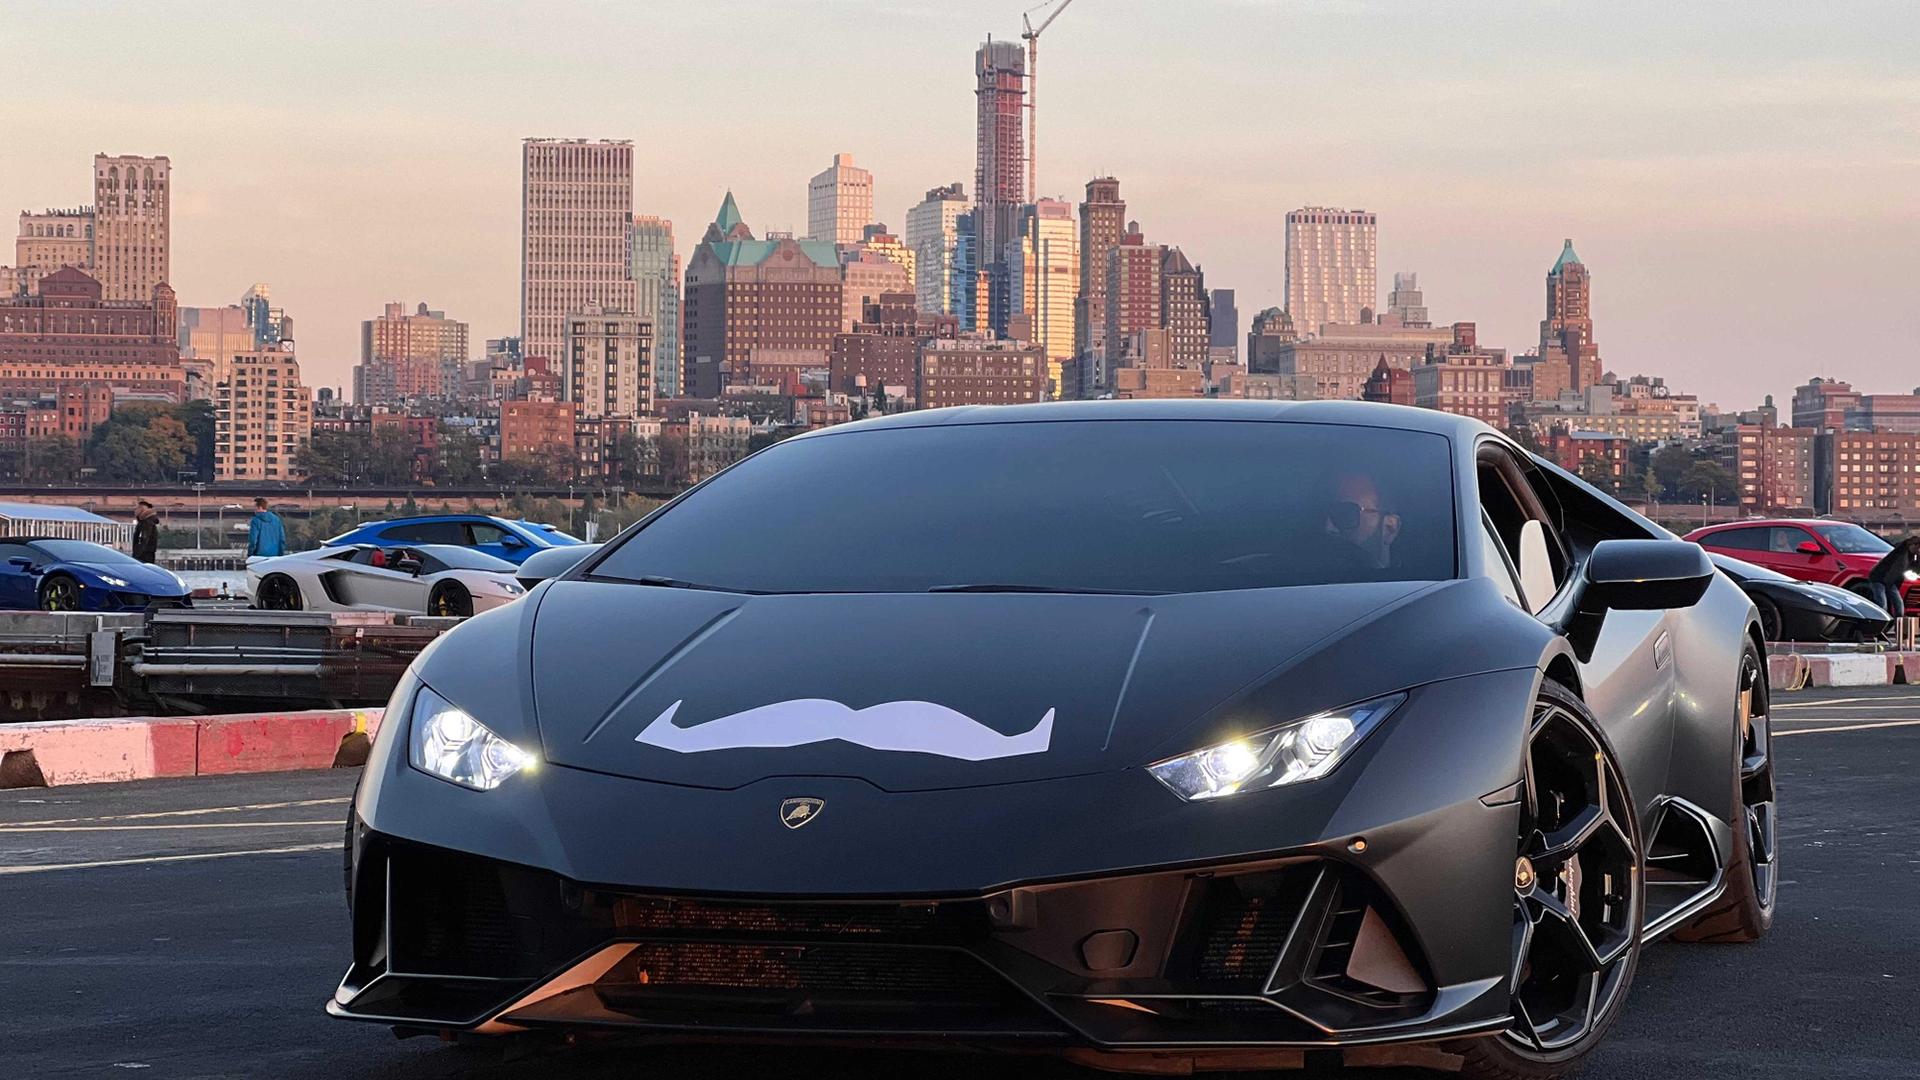 A Lamborghini in New York